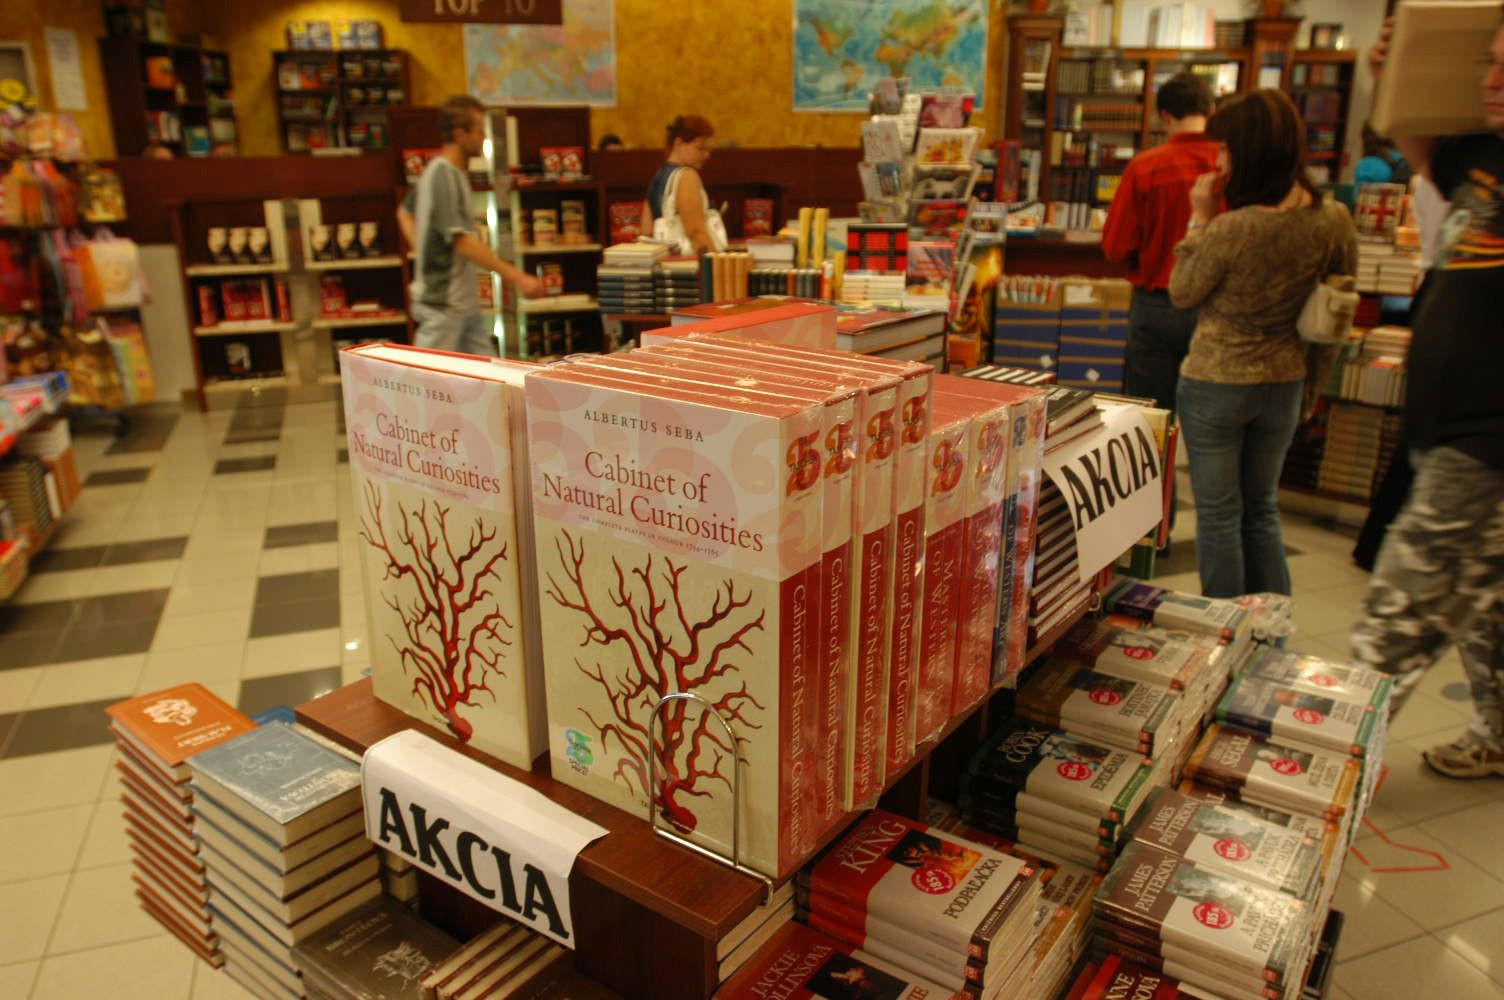 V roku 2012 sa kníhkupectvo Panta Rhei dostalo do finančných problémov. Vstupom J&T boli vyrovnané všetky záväzky voči dodávateľom, vydavateľom a knižným distribútorom.